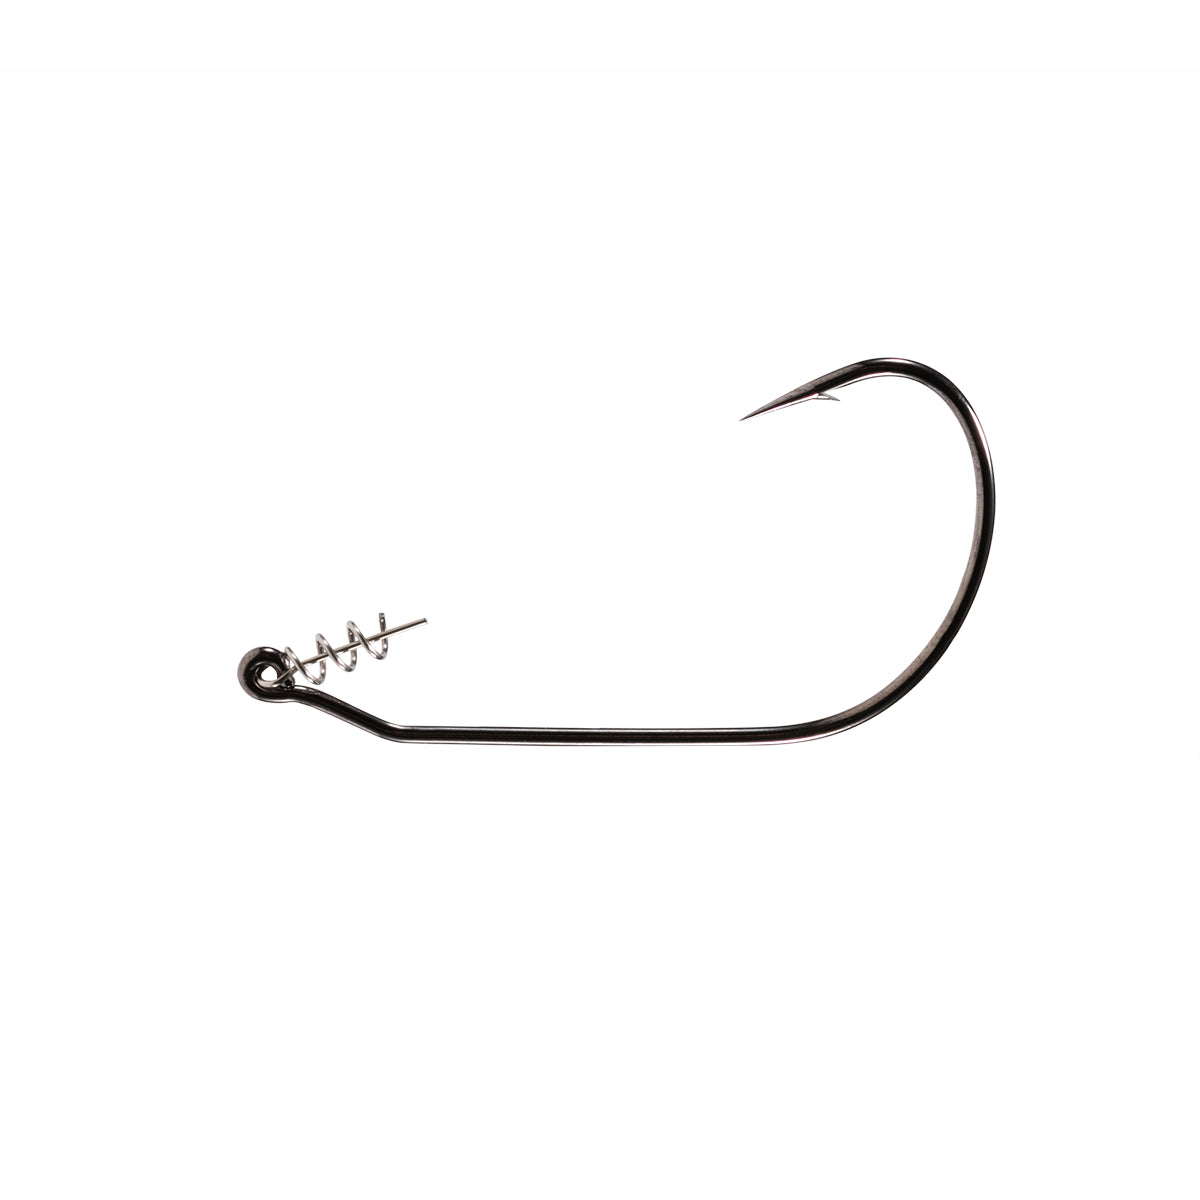 Buy Swimbait Hook 3 Pack for $1.99 – Nako